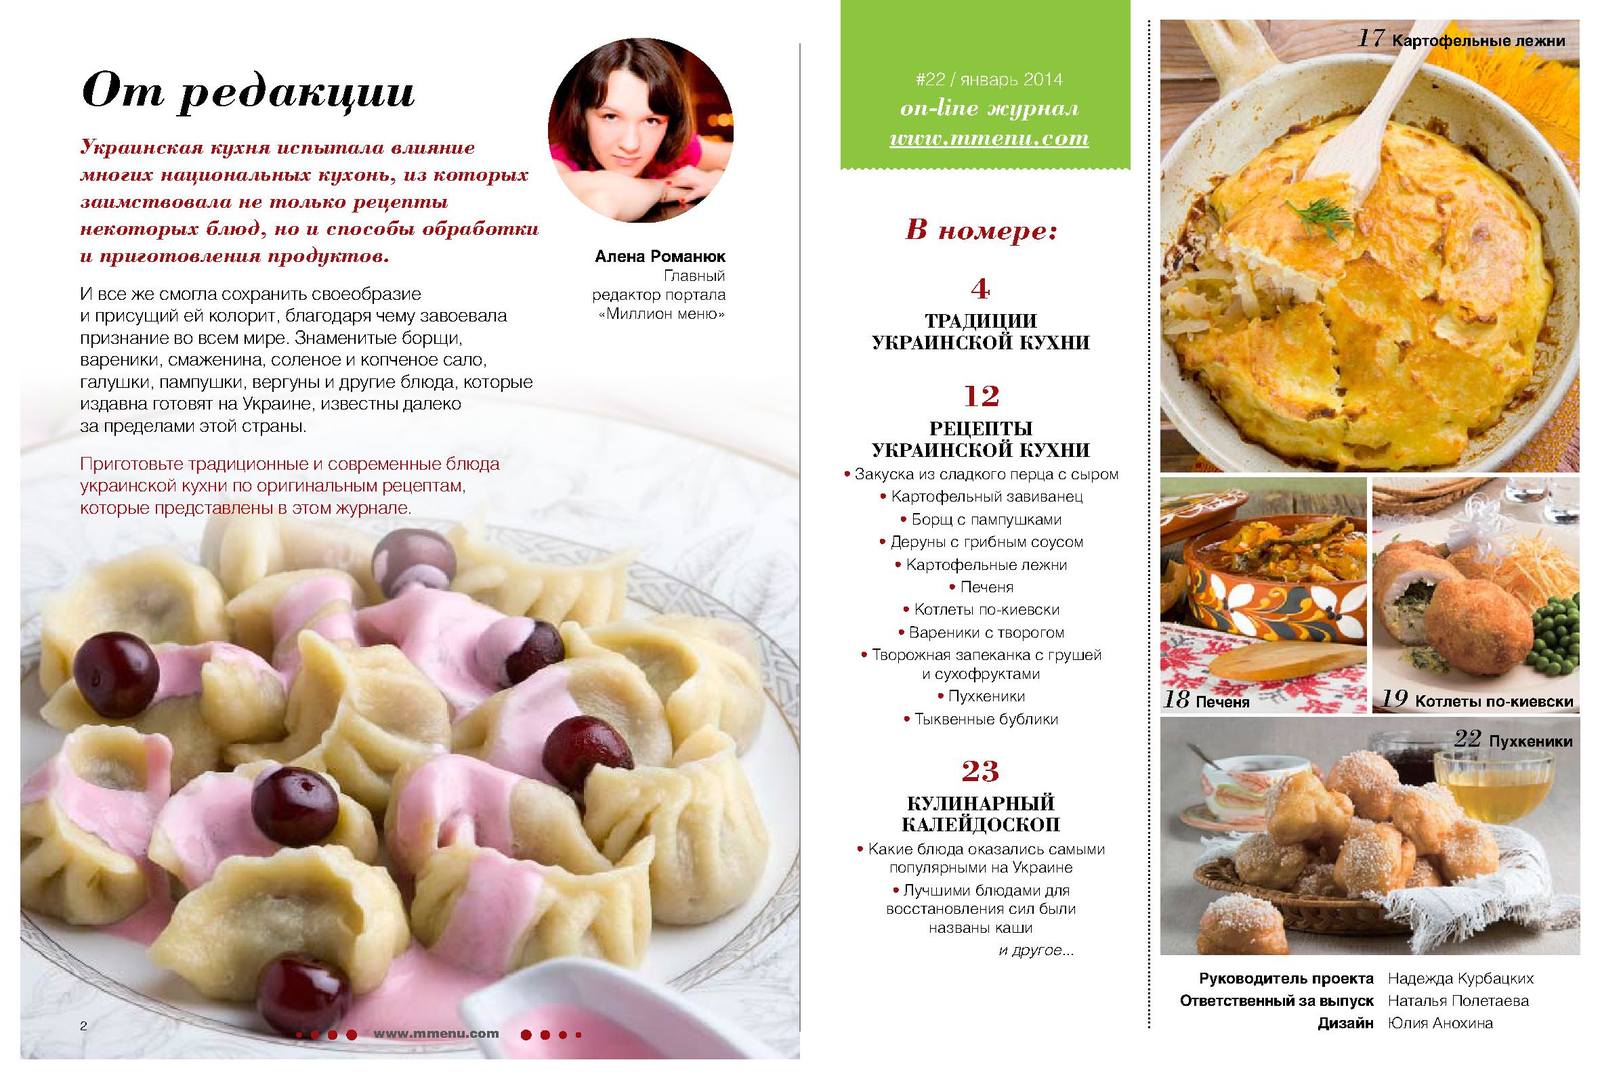 Меню украинской кухни